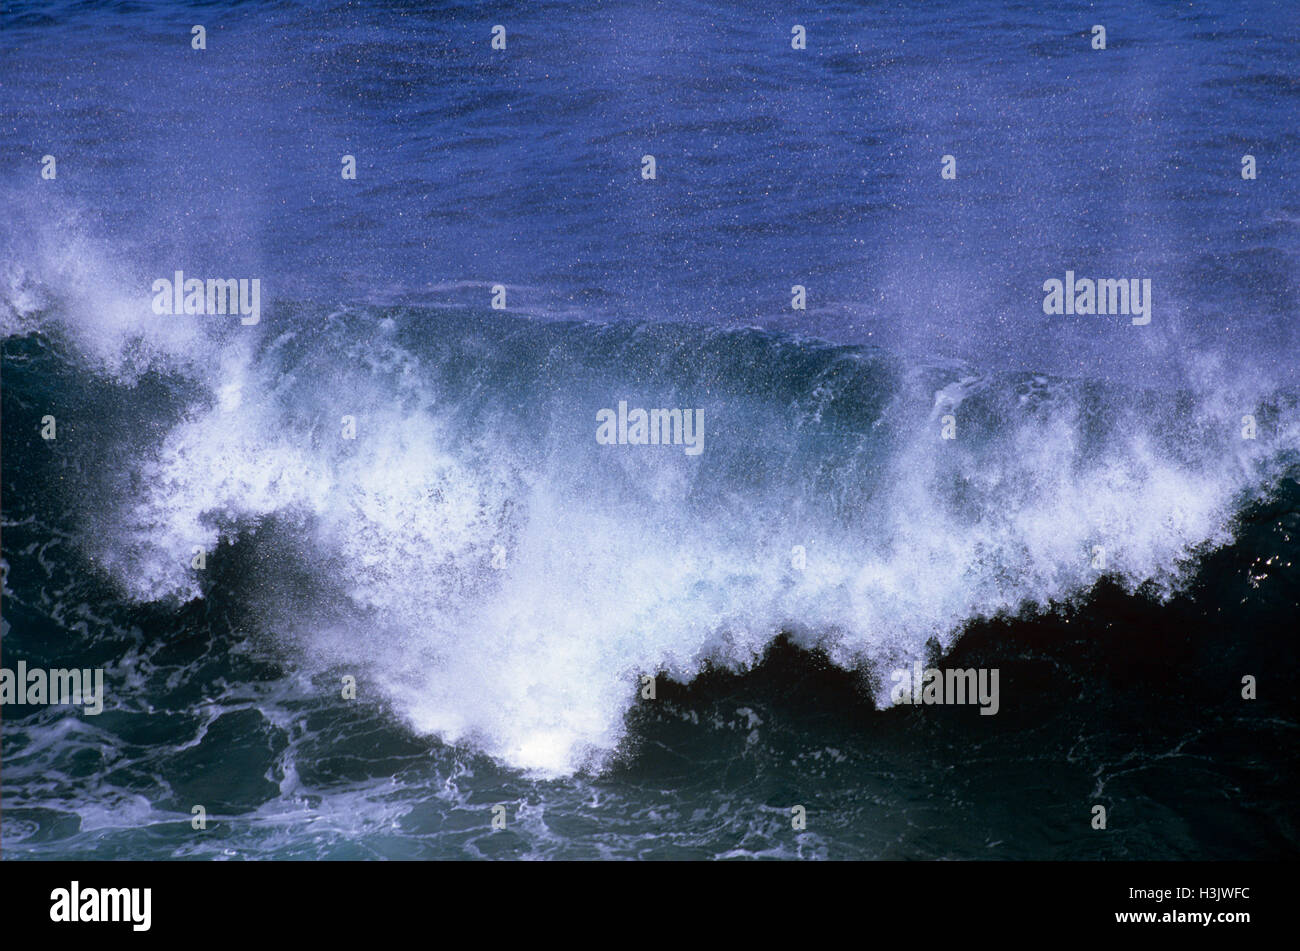 Crashing wave, Stock Photo